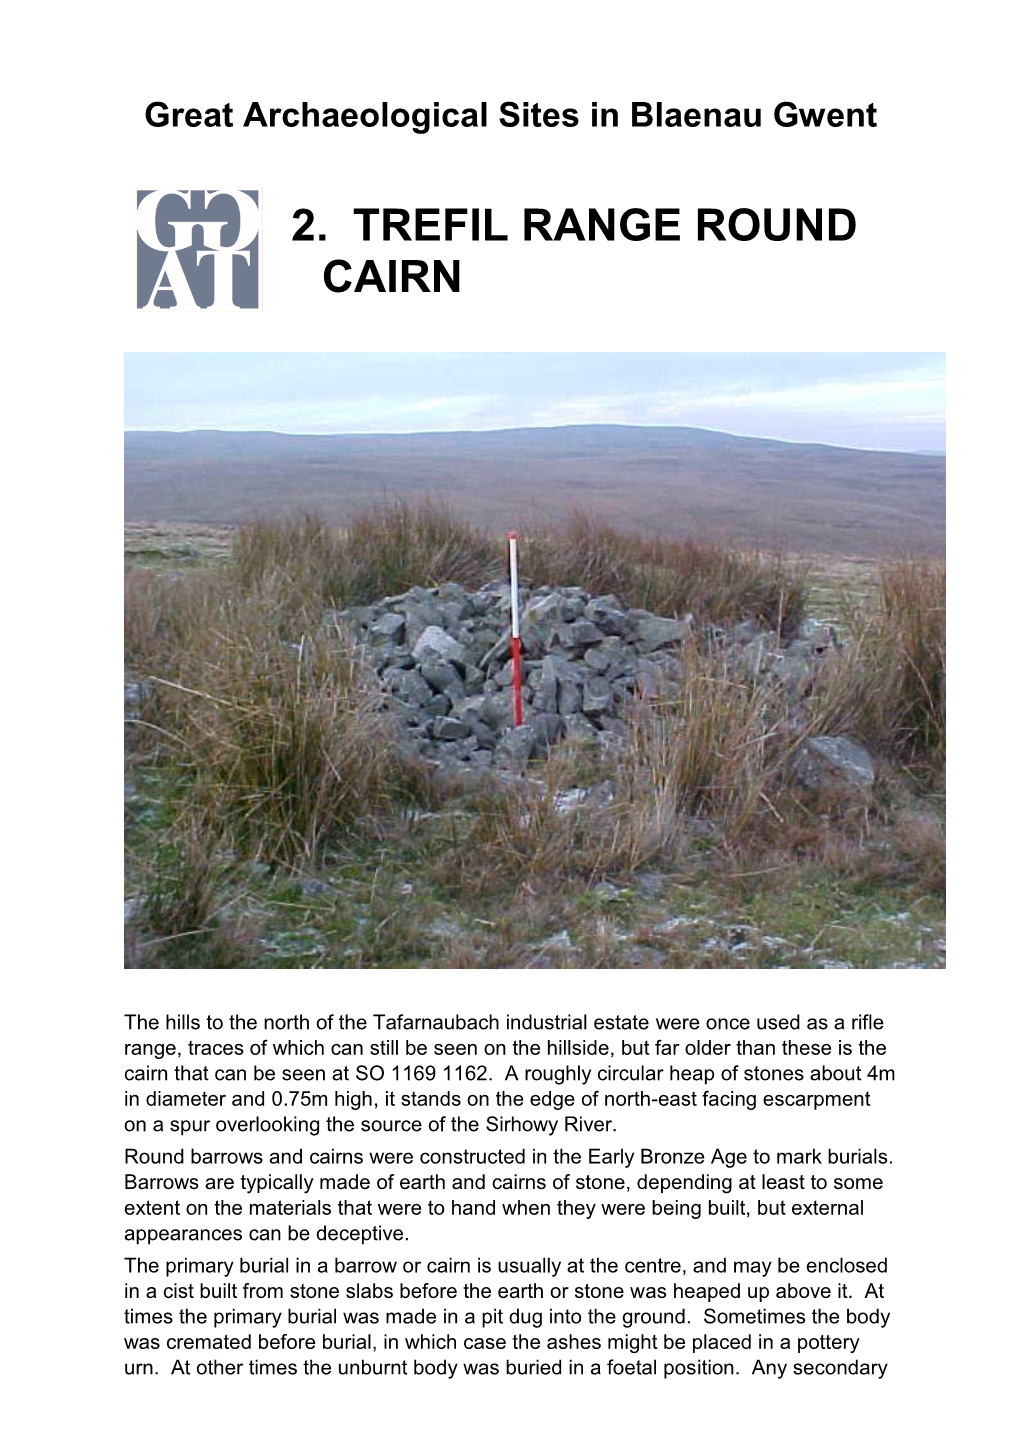 Trefil Range Round Cairn